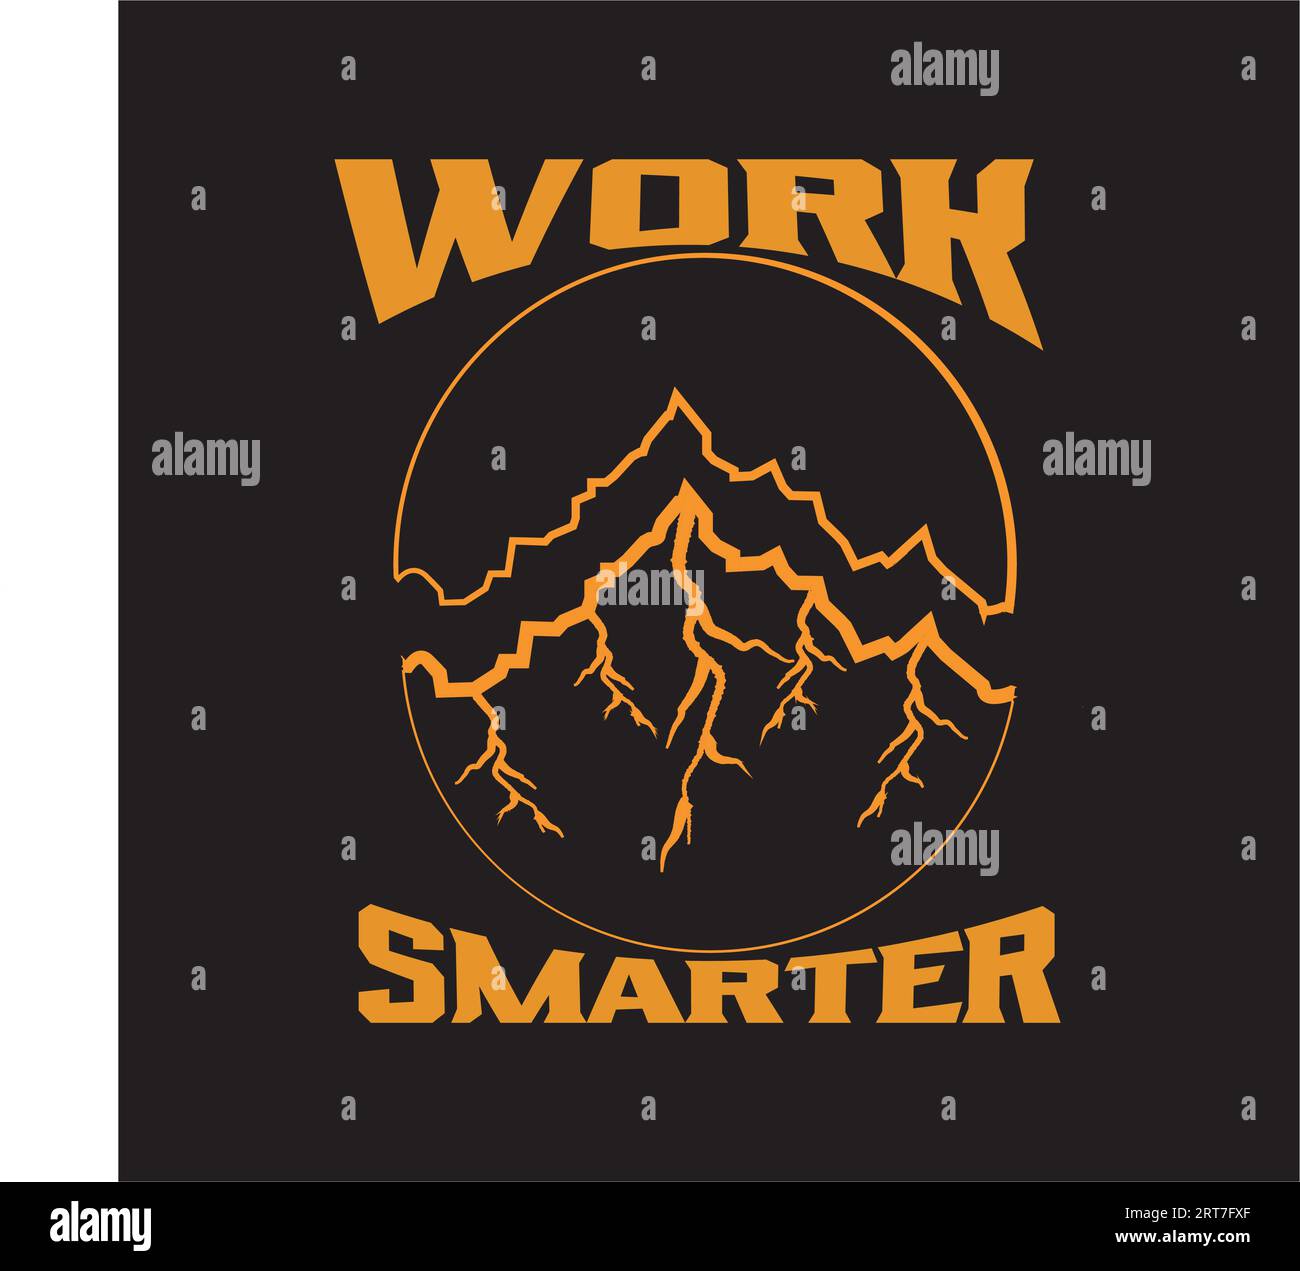 Dunkles T-Shirt-Design für Abenteuer Stock Vektor